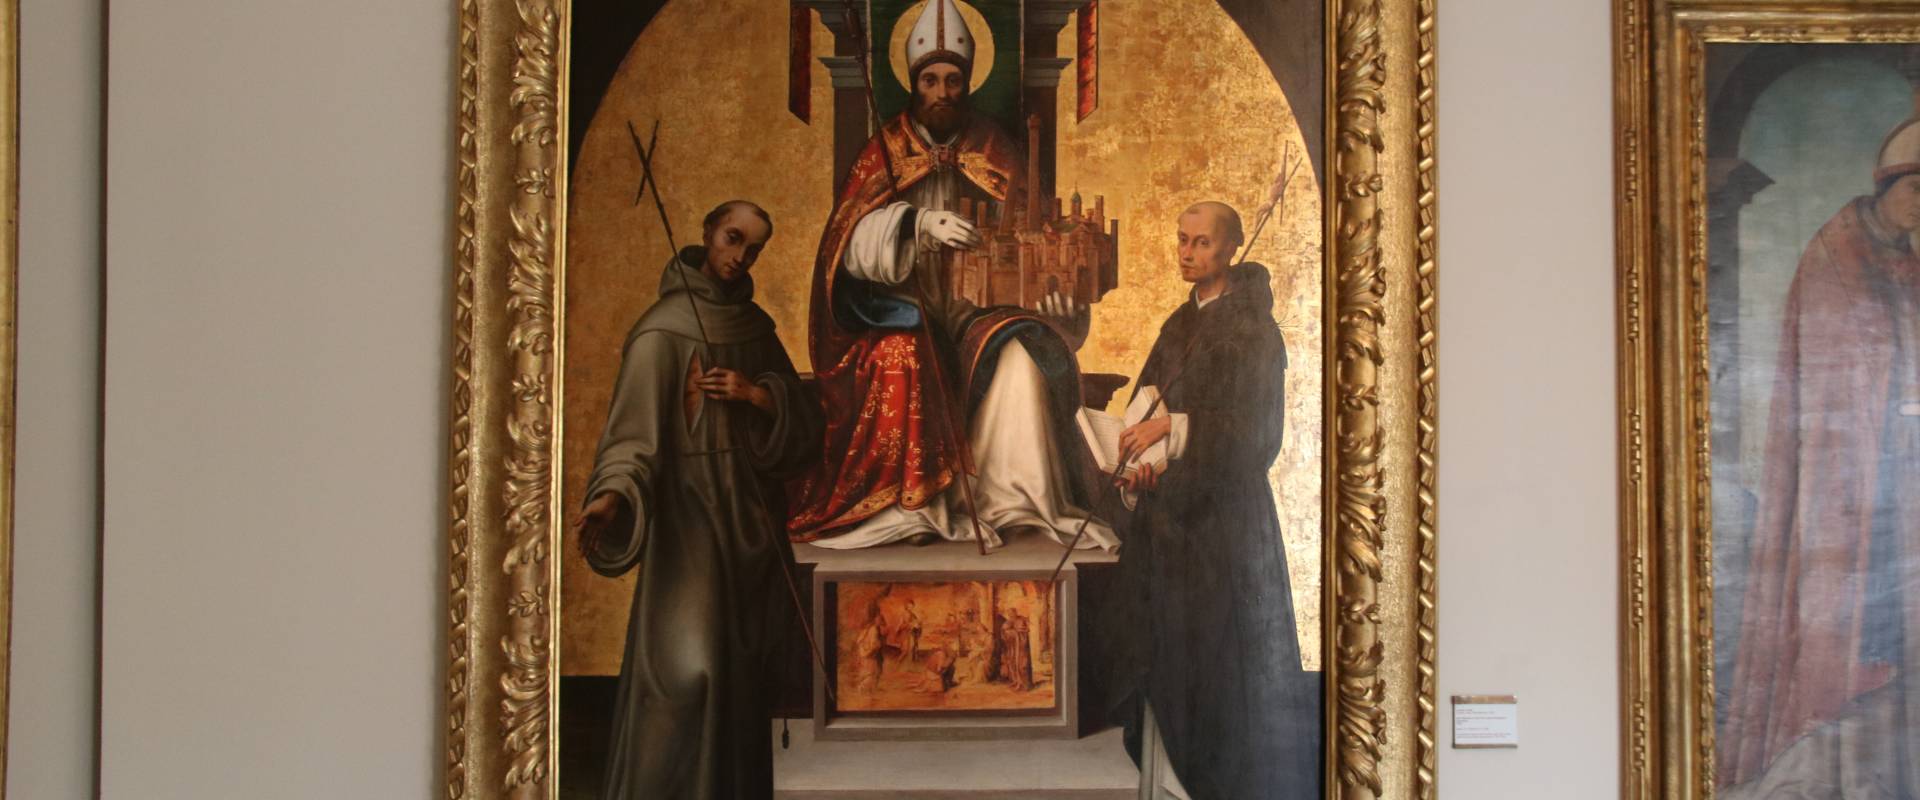 Lorenzo Costa, San Petronio in trono fra i ss. Francesco e Domenico (1502) 02 foto di Mongolo1984